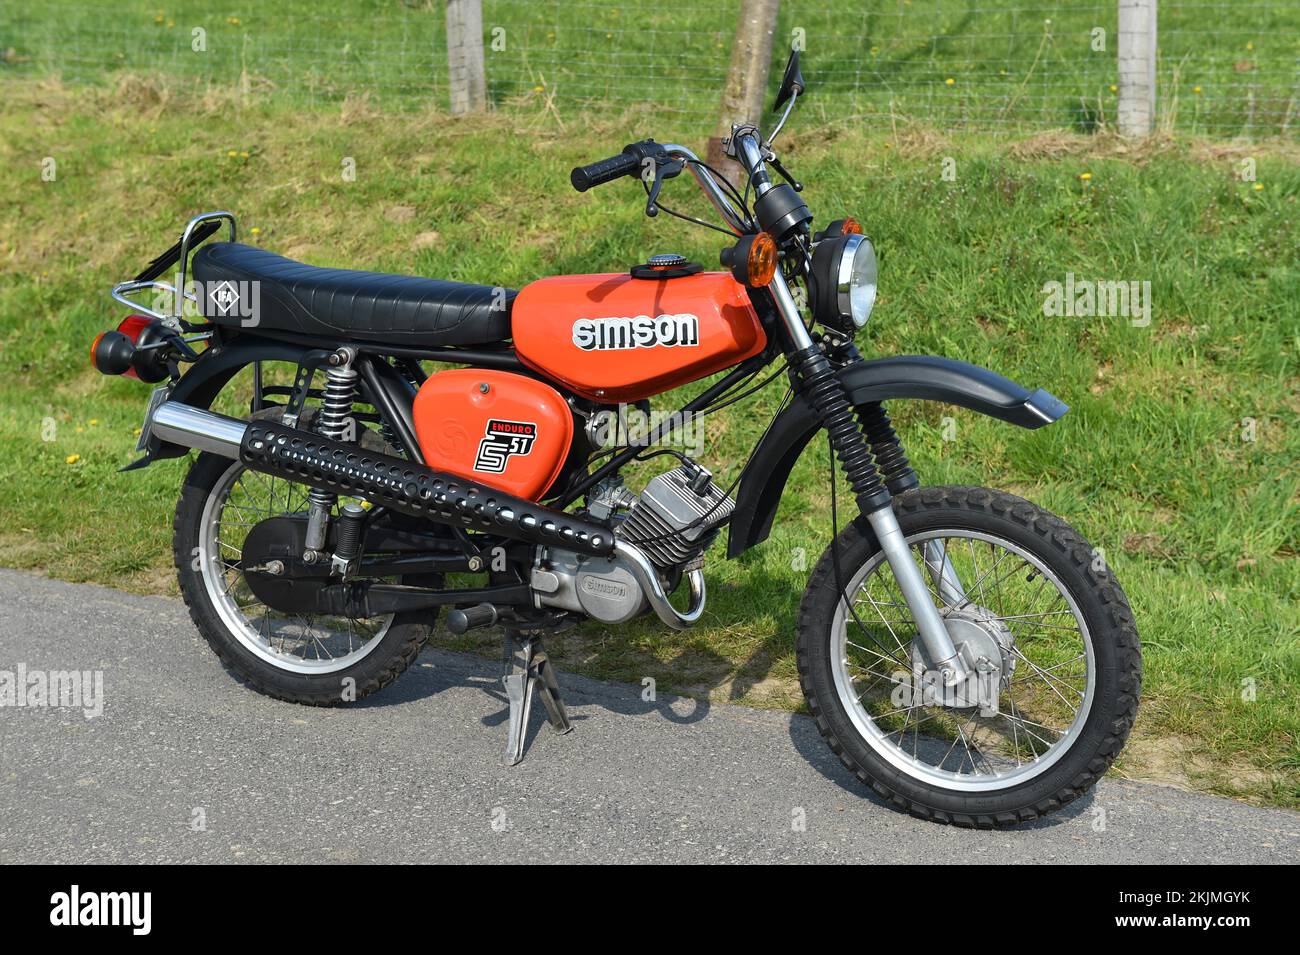 Ciclomotor clásico del GDR Simson S51, Hesse, Alemania, Europa Foto de stock